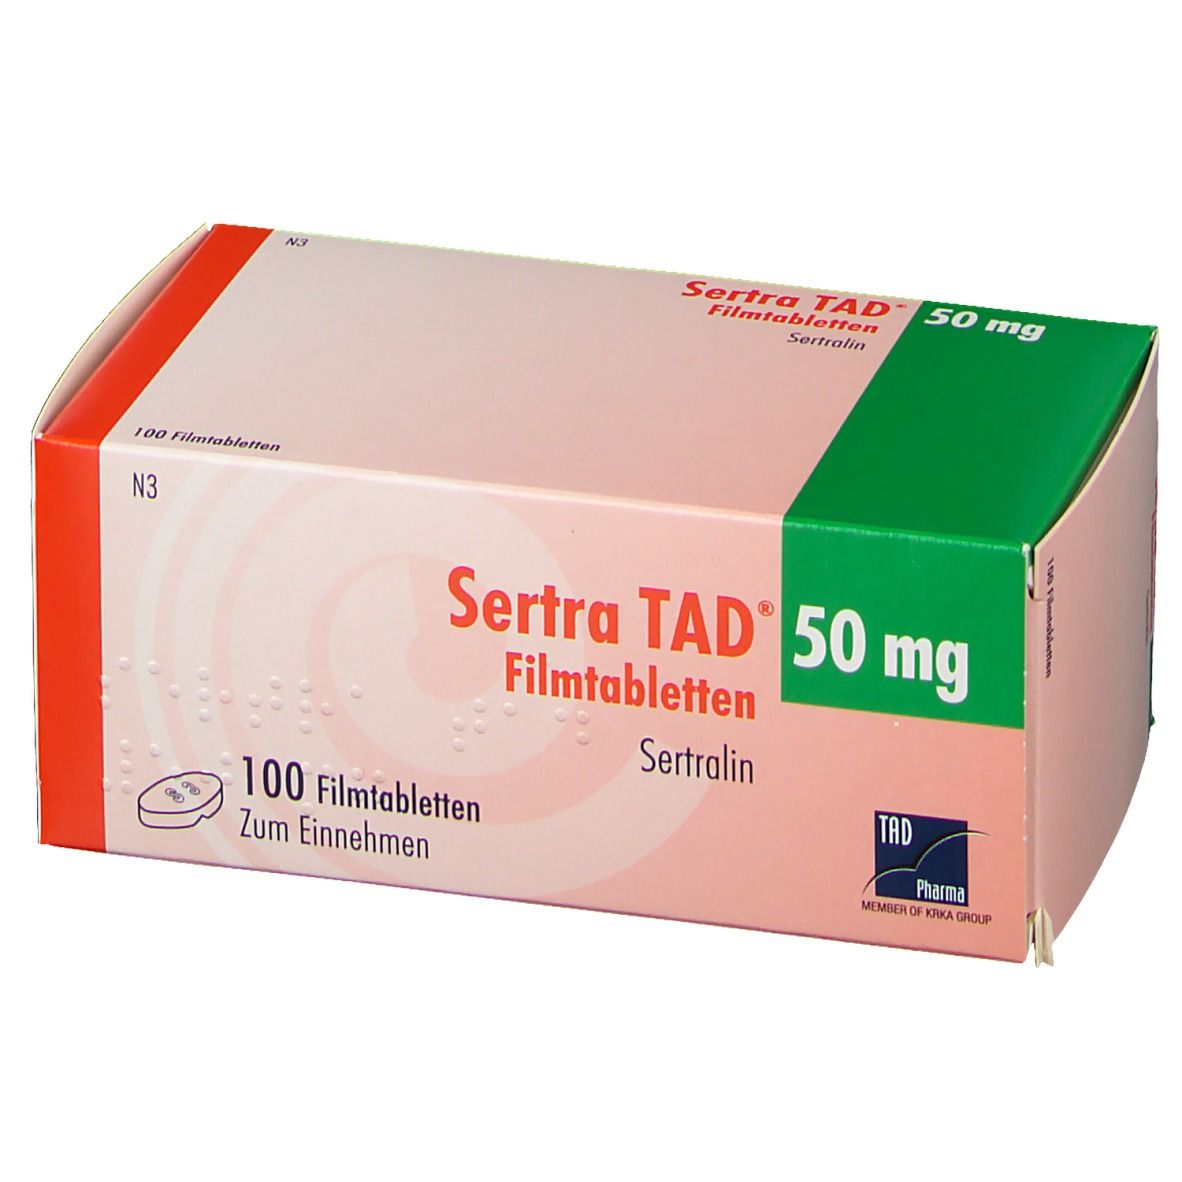 Sertra TAD® 50 mg